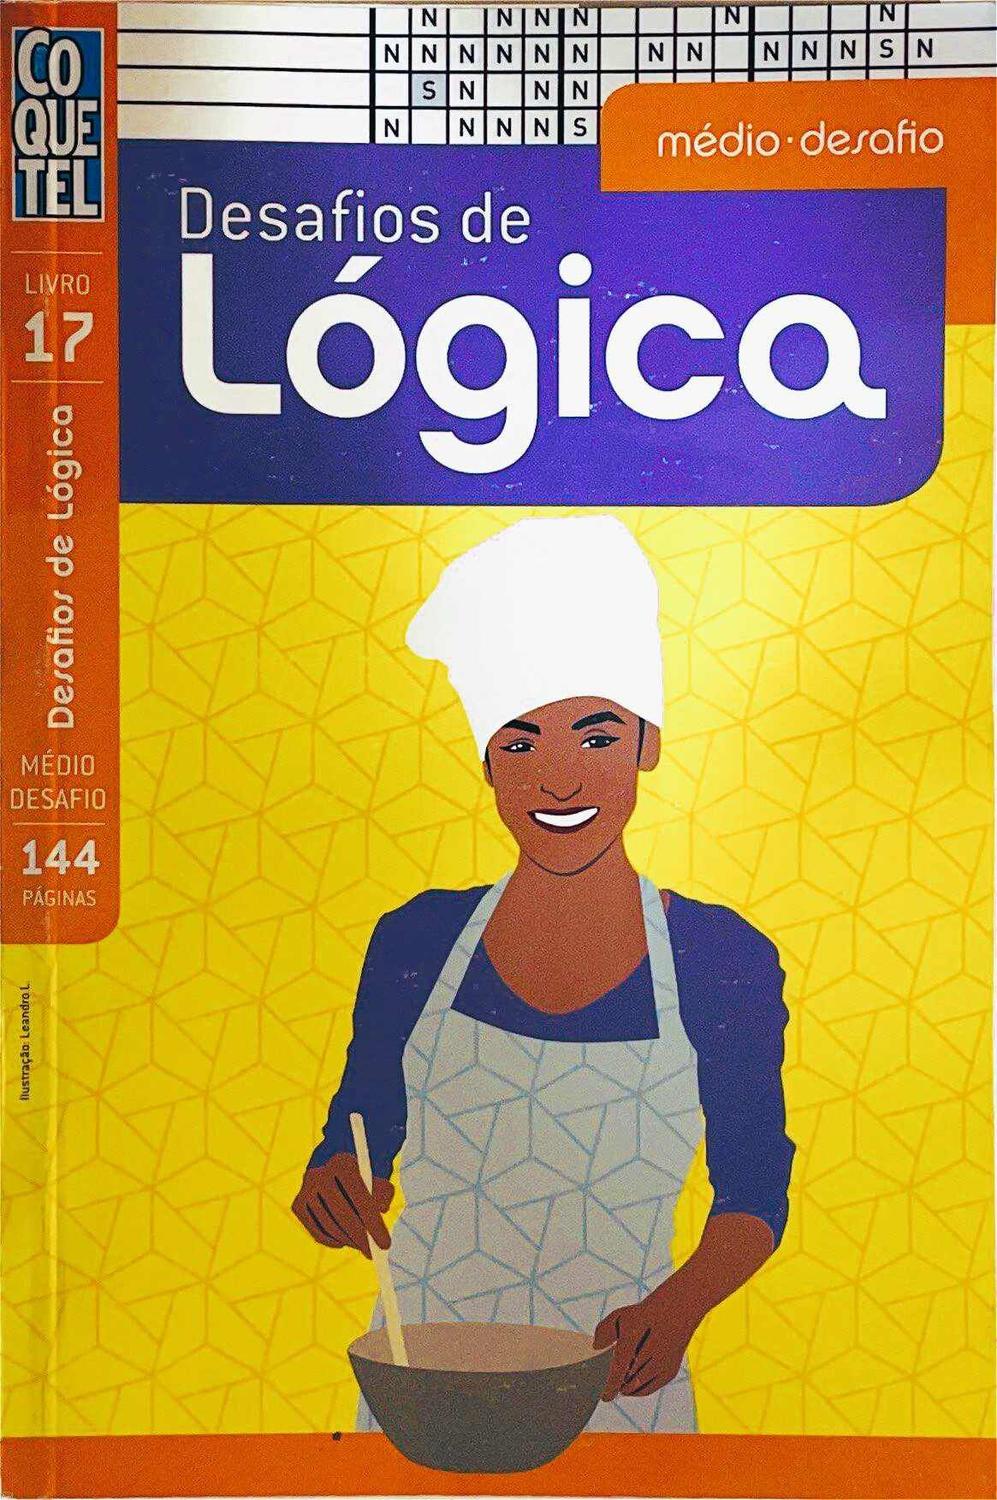 Desafios De Logica - Nivel Medio-desafio - Vol. 13 - 9788577487516